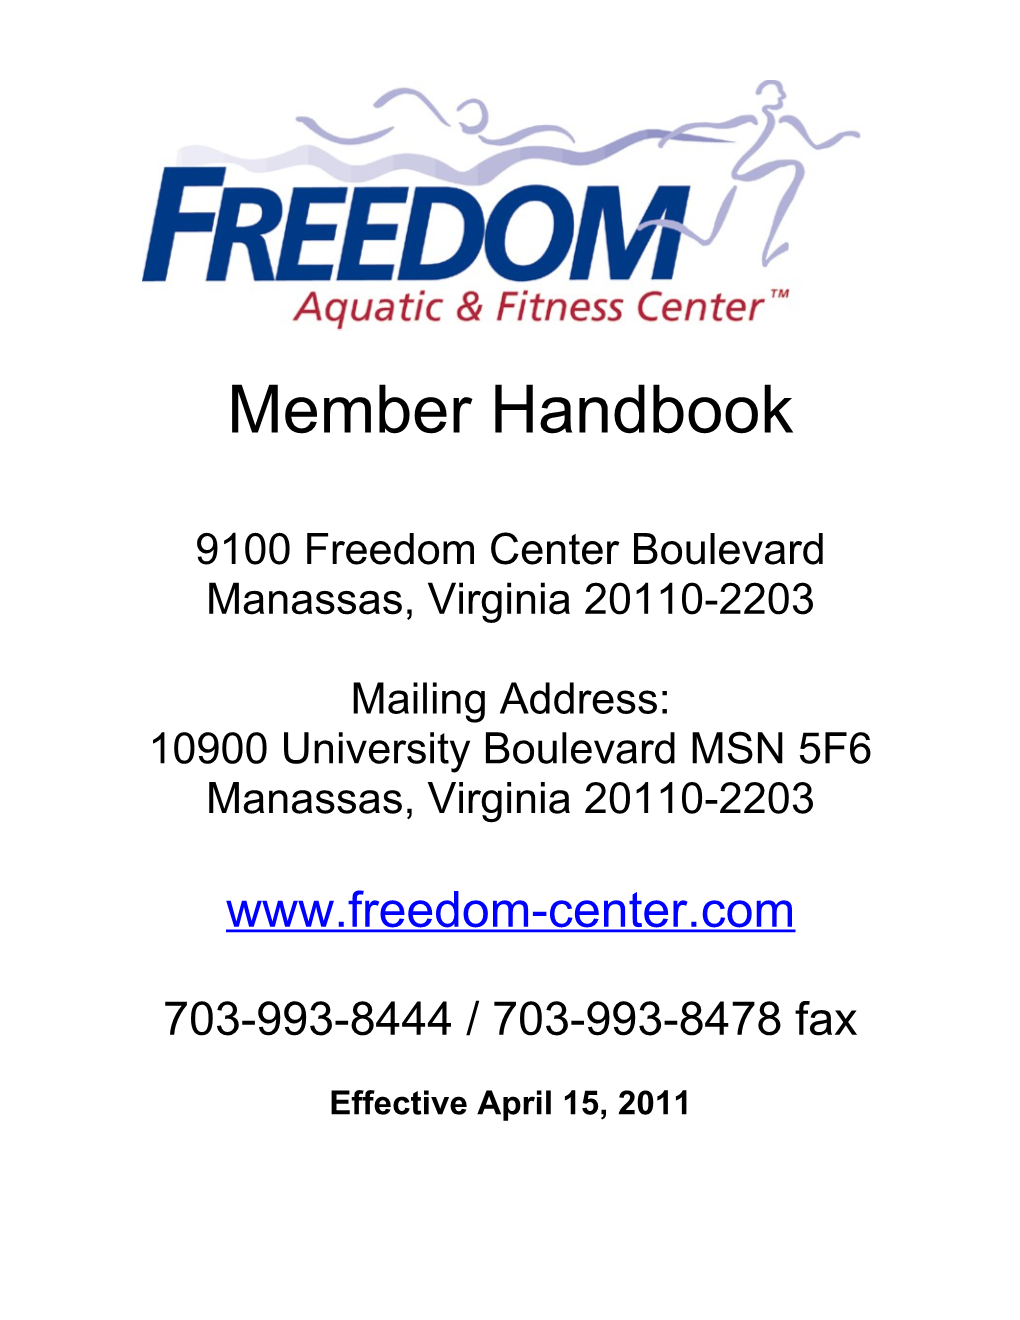 Membership Membership Handbook January 2005